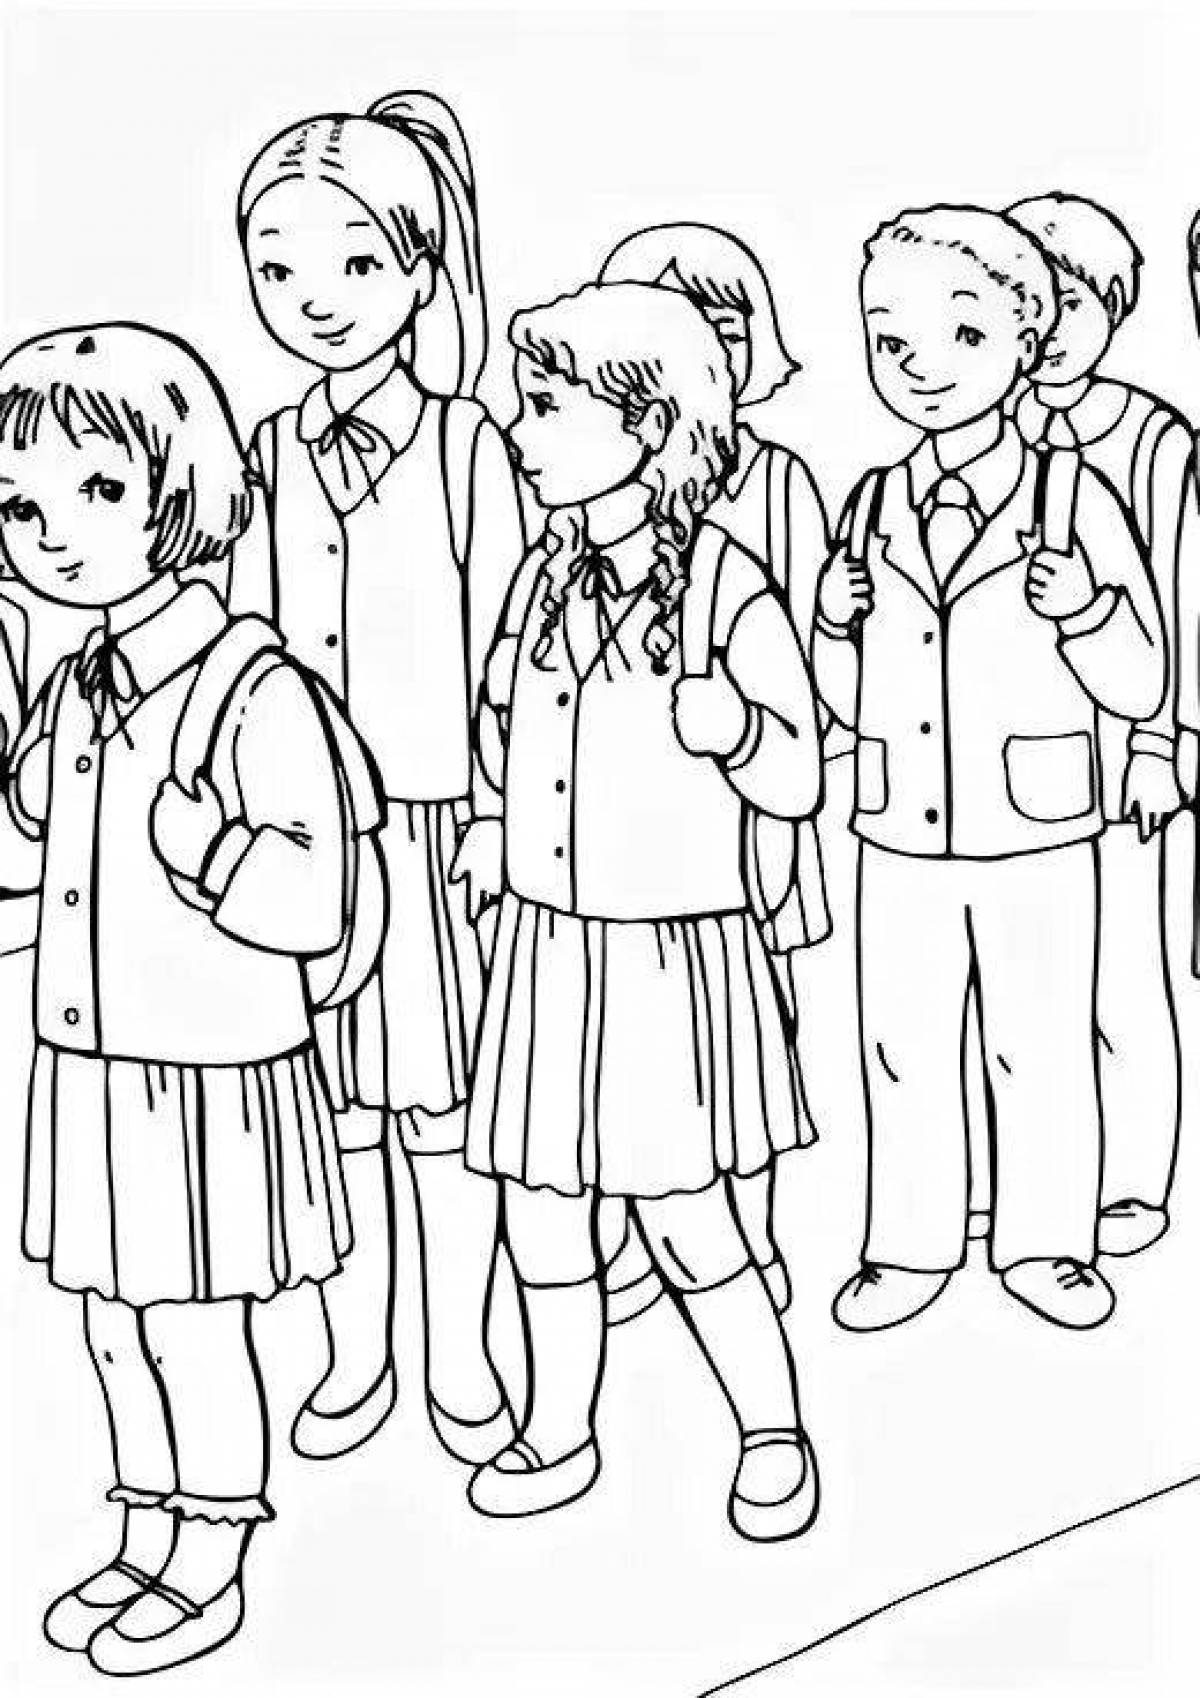 Attractive school uniform coloring book